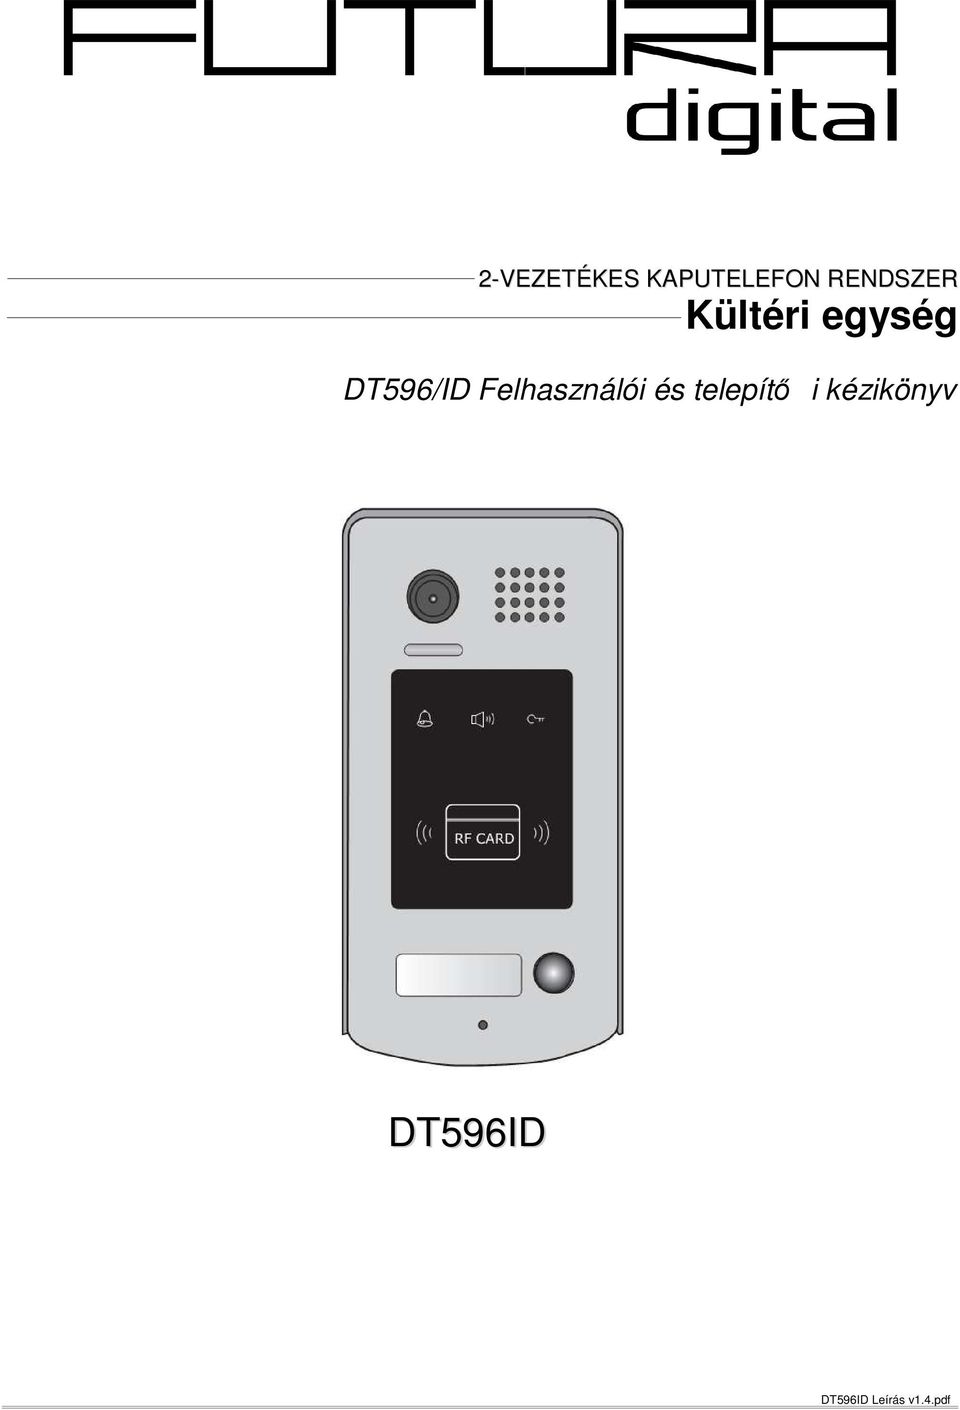 DT596/ID Felhasználói és